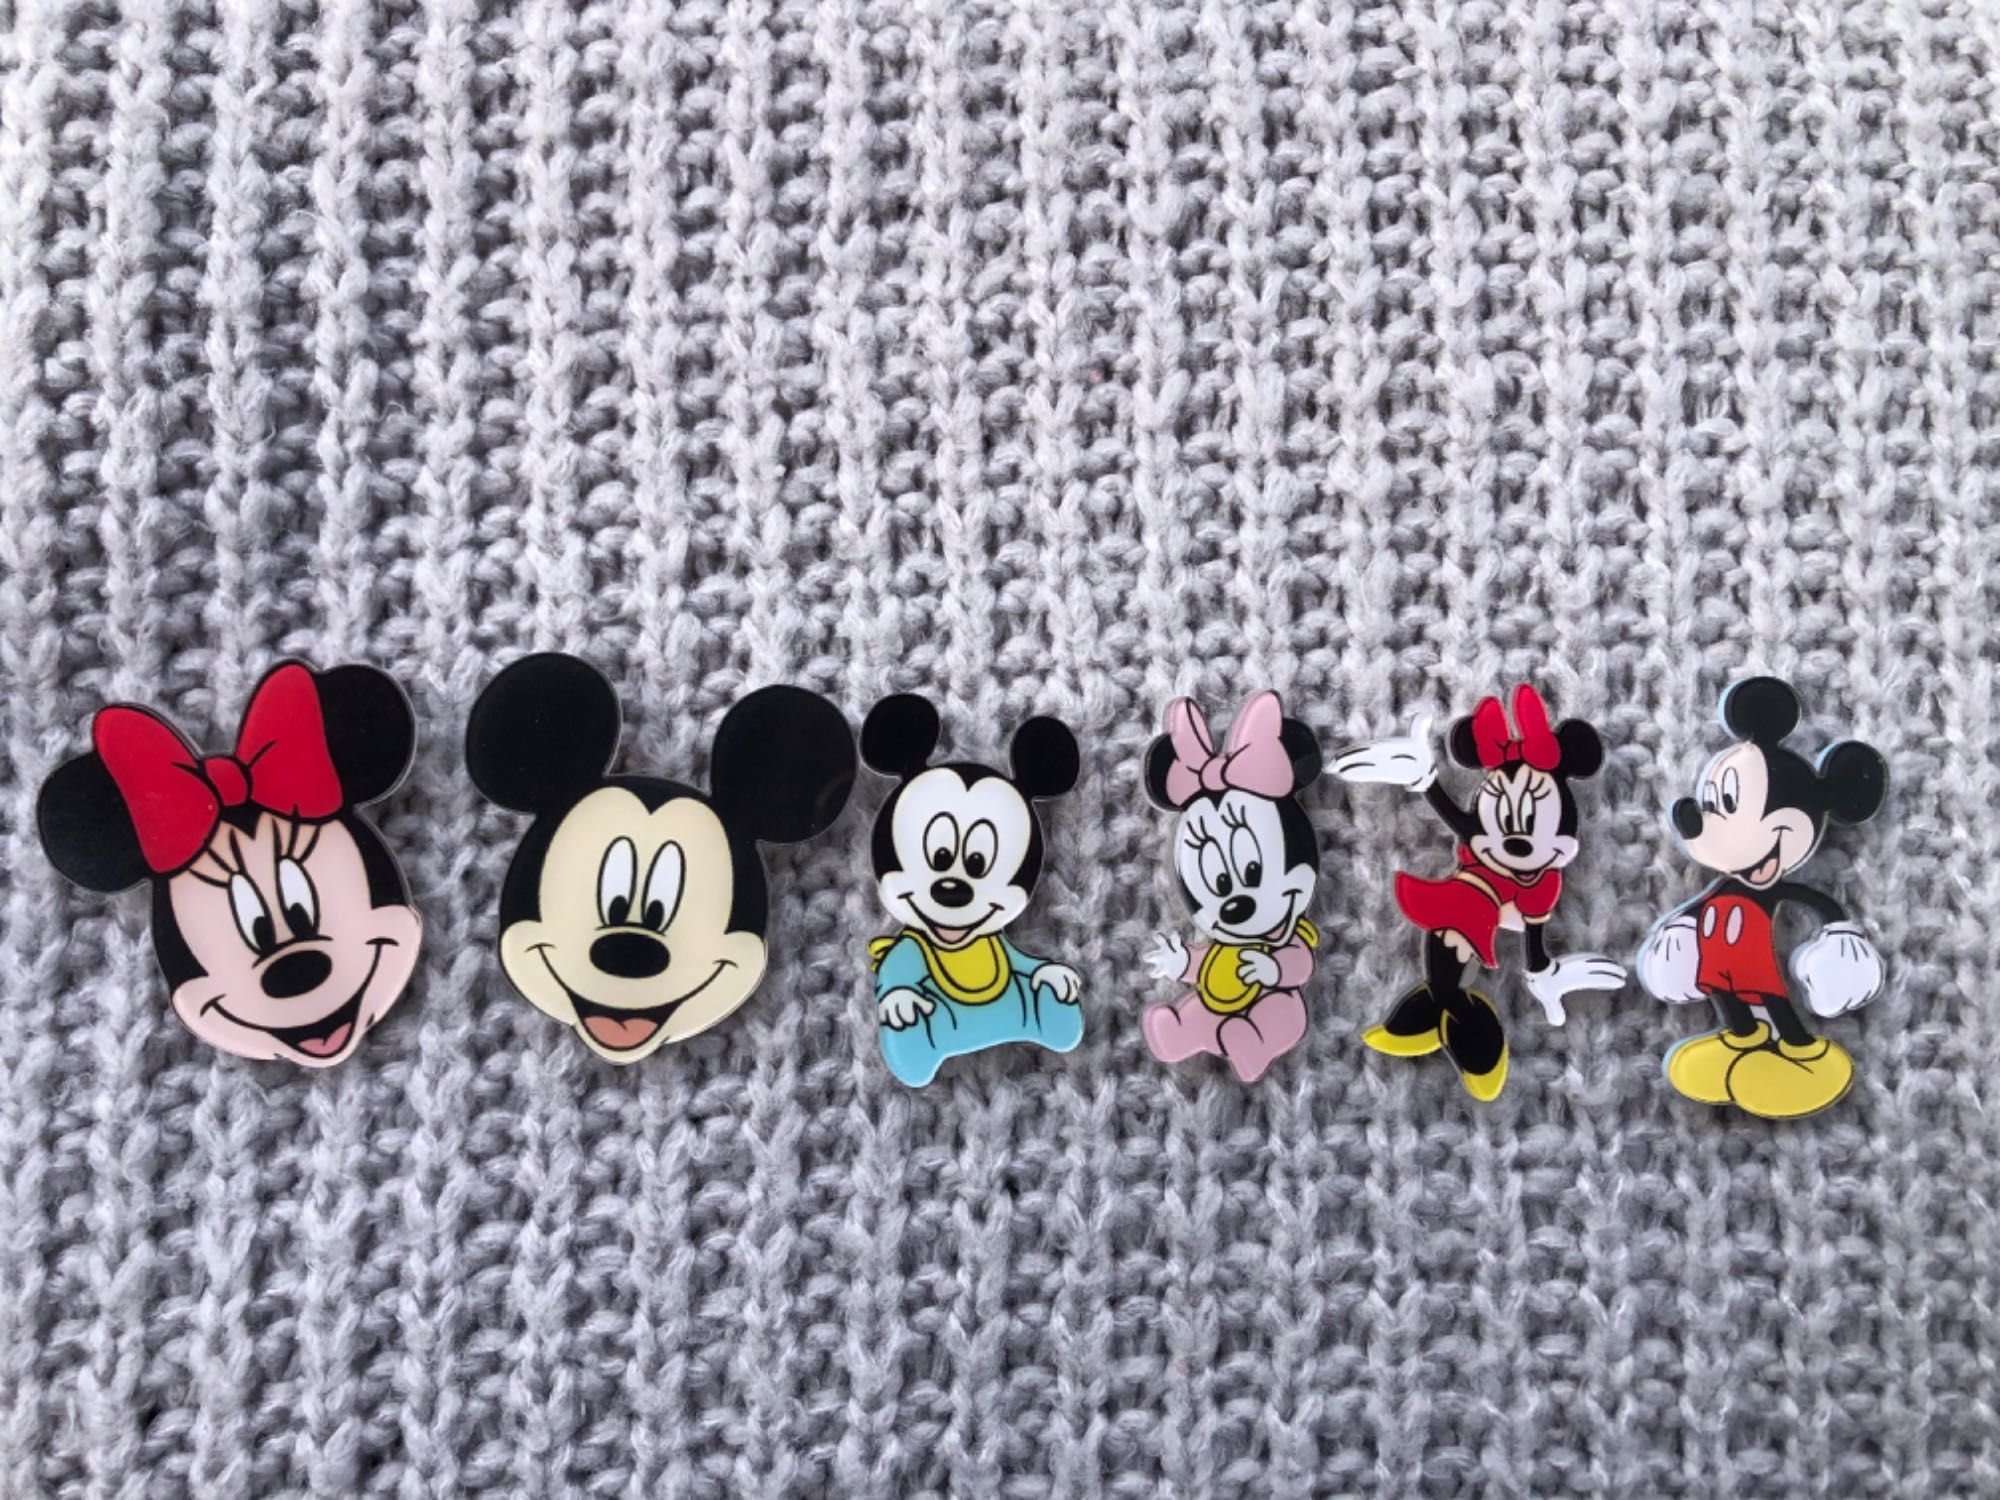 Broszka z kolekcji Mickey z postaciami Disneya Myszką Miki i Minnie